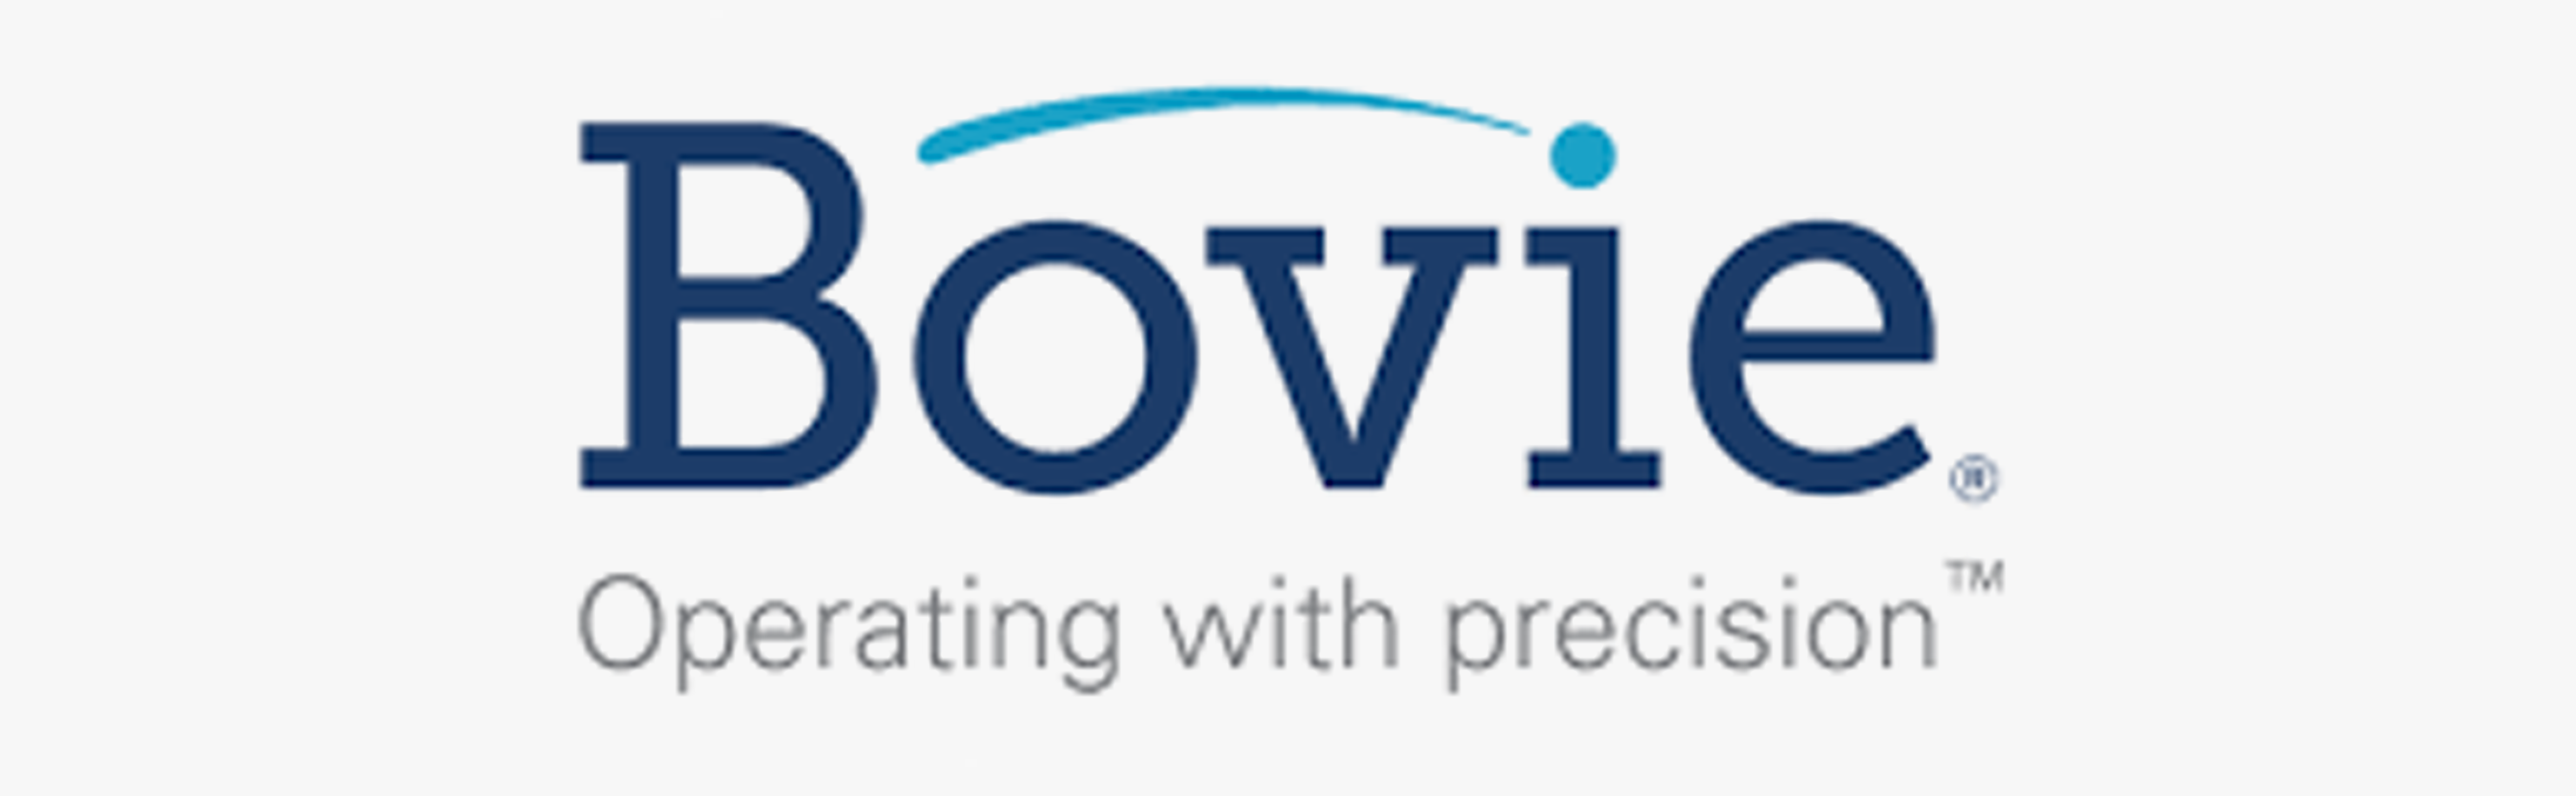 Bovie Medical Industries, Inc.